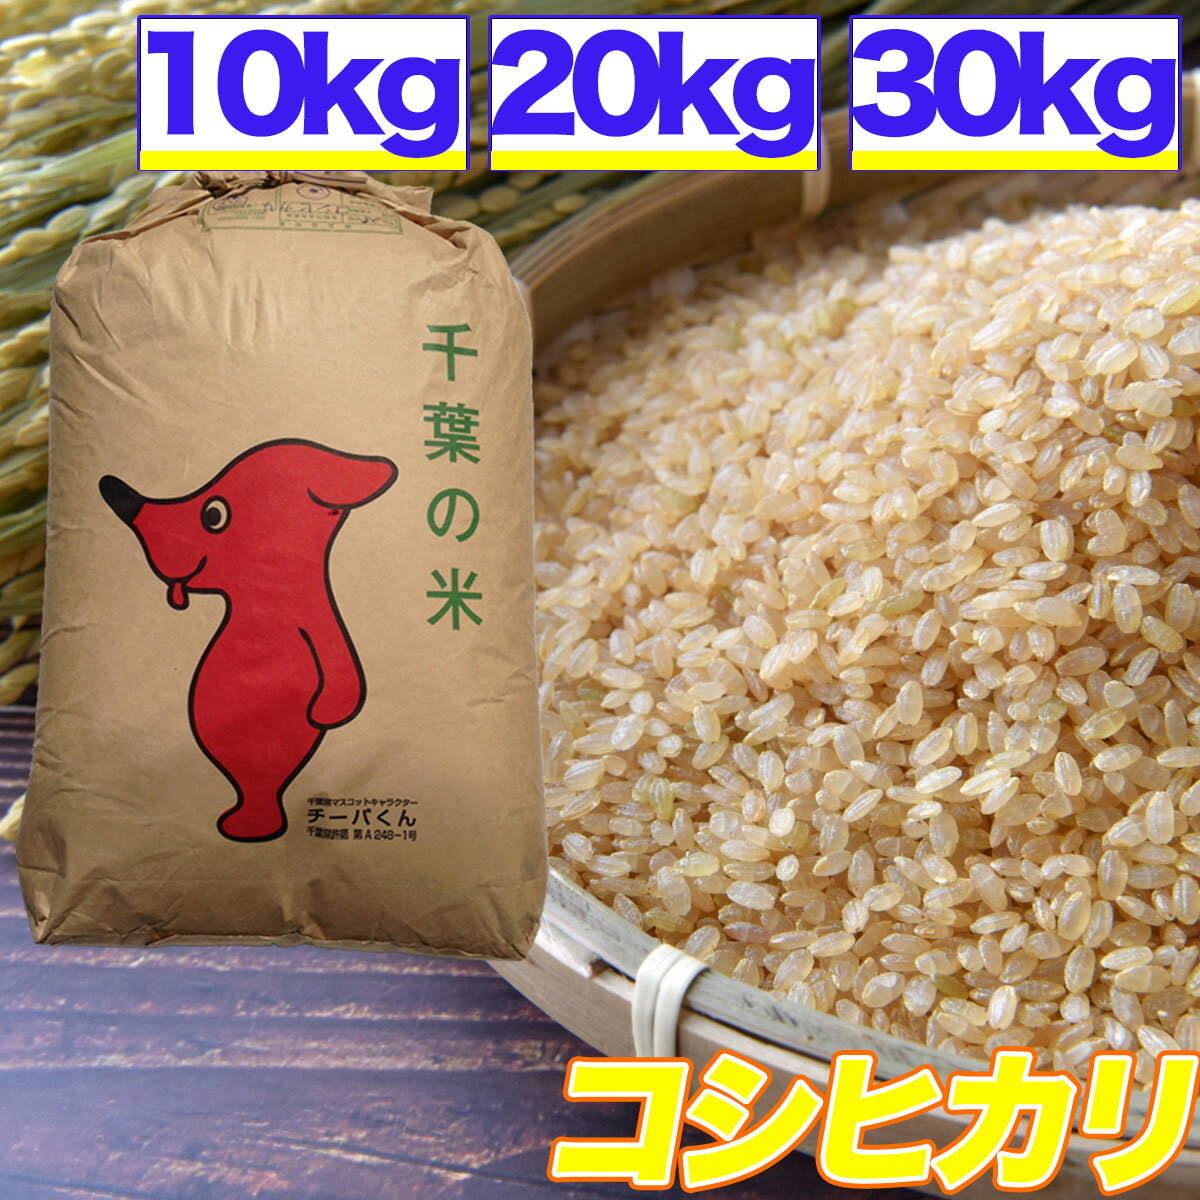 米 コシヒカリ 10kg 20kg 30kg 残留農薬検査済